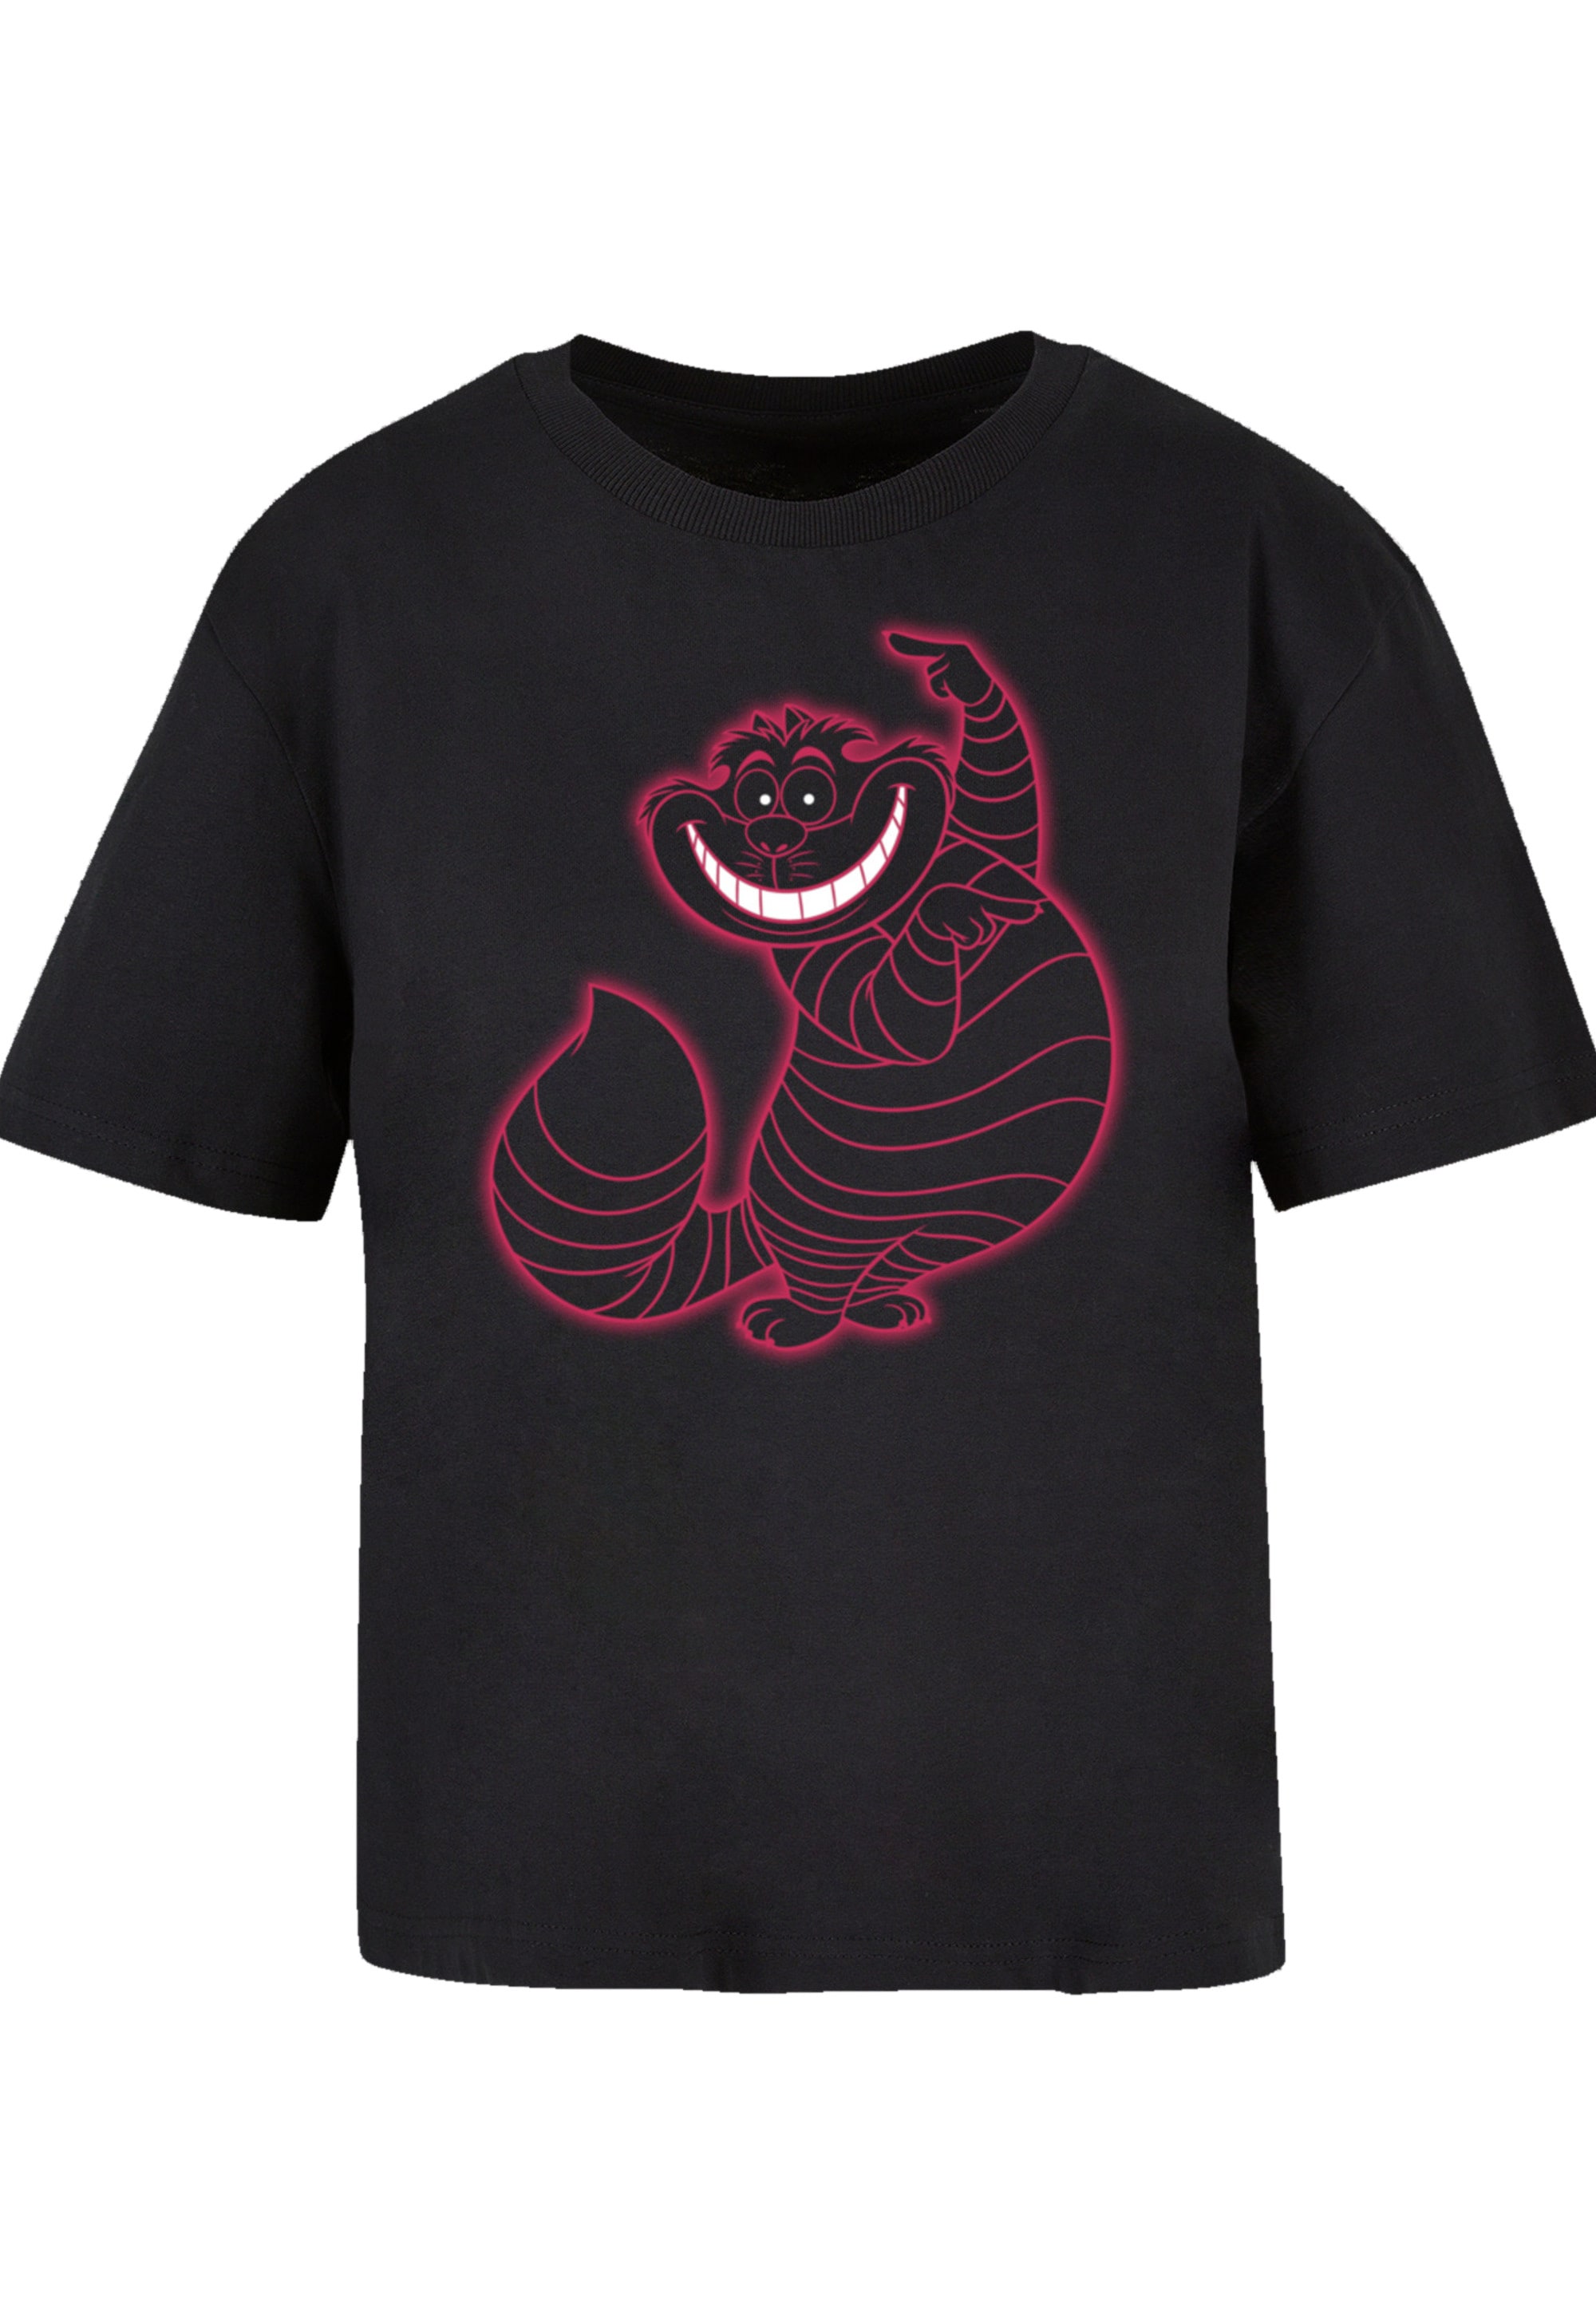 für Alice | Pinky«, F4NT4STIC kaufen T-Shirt Premium Wunderland Qualität »Disney Cheshire BAUR im Cat